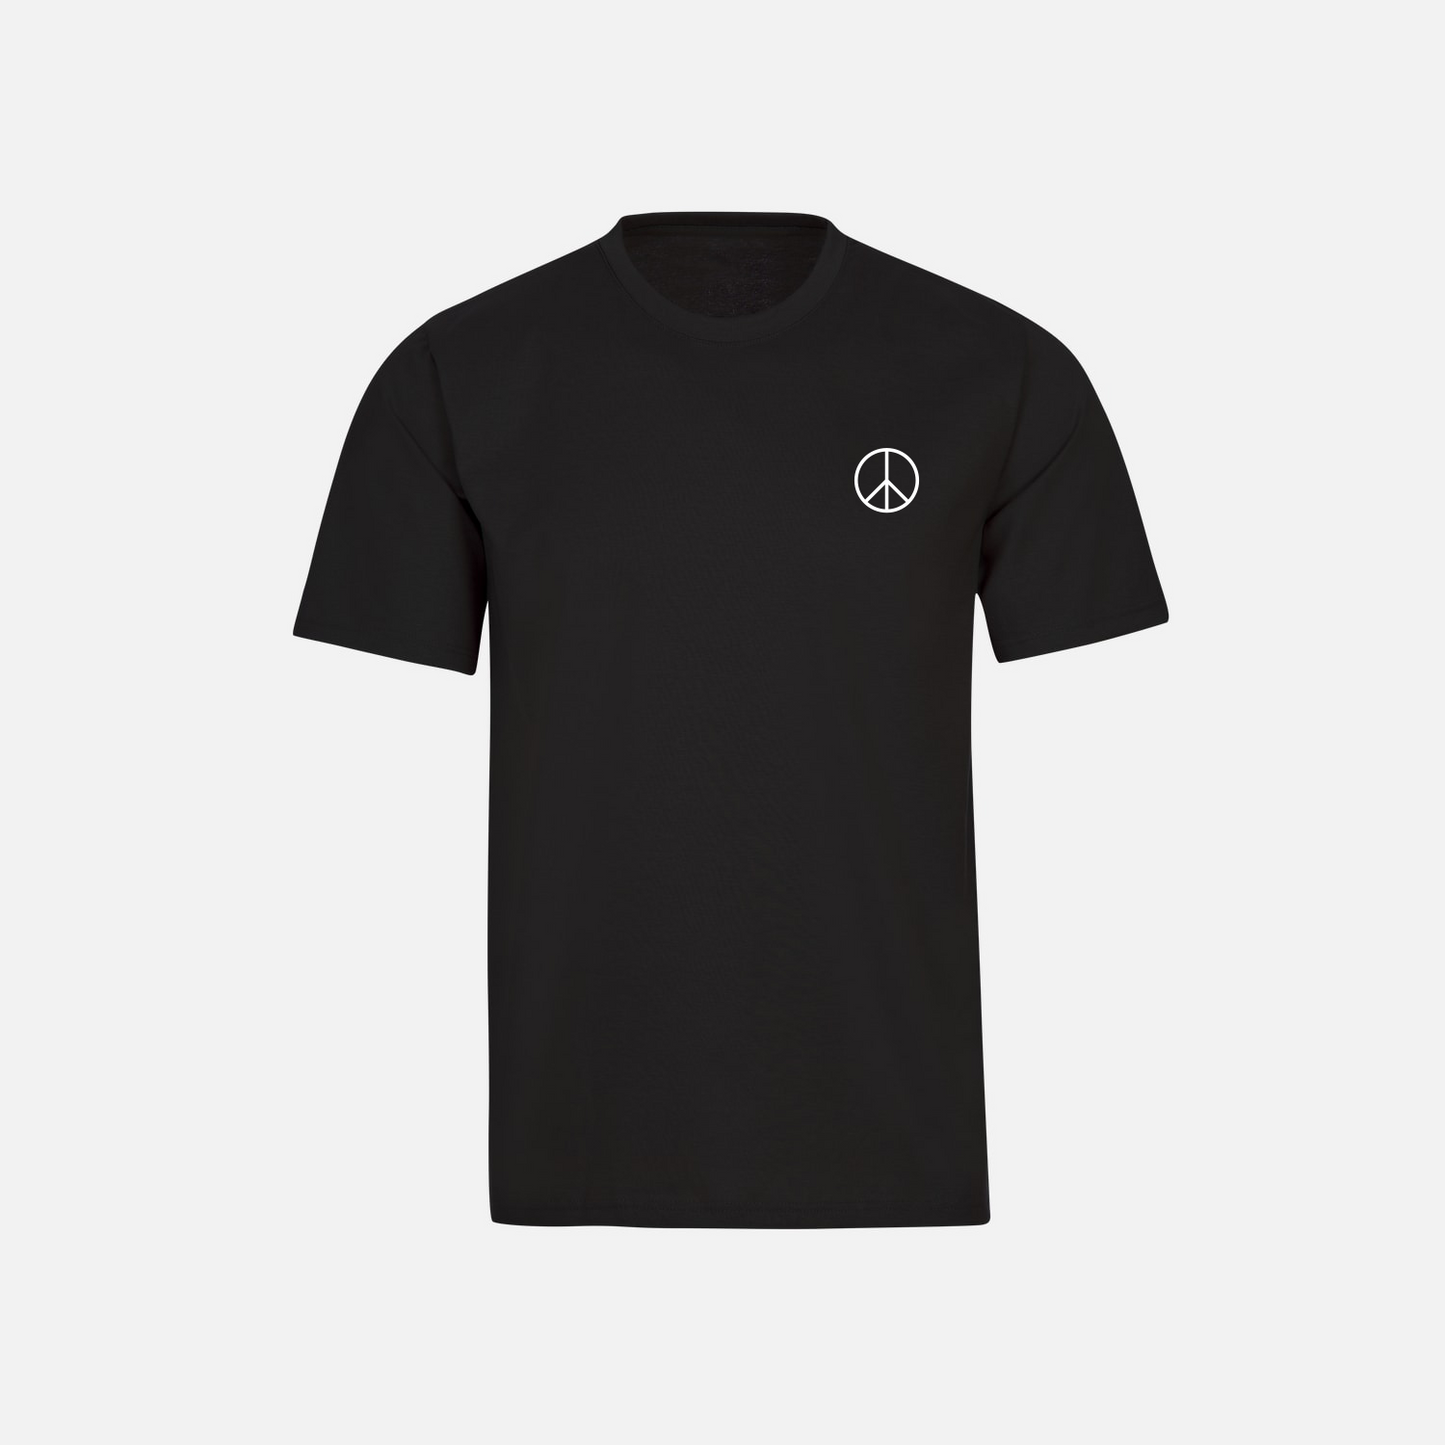 PEACE T-Shirt